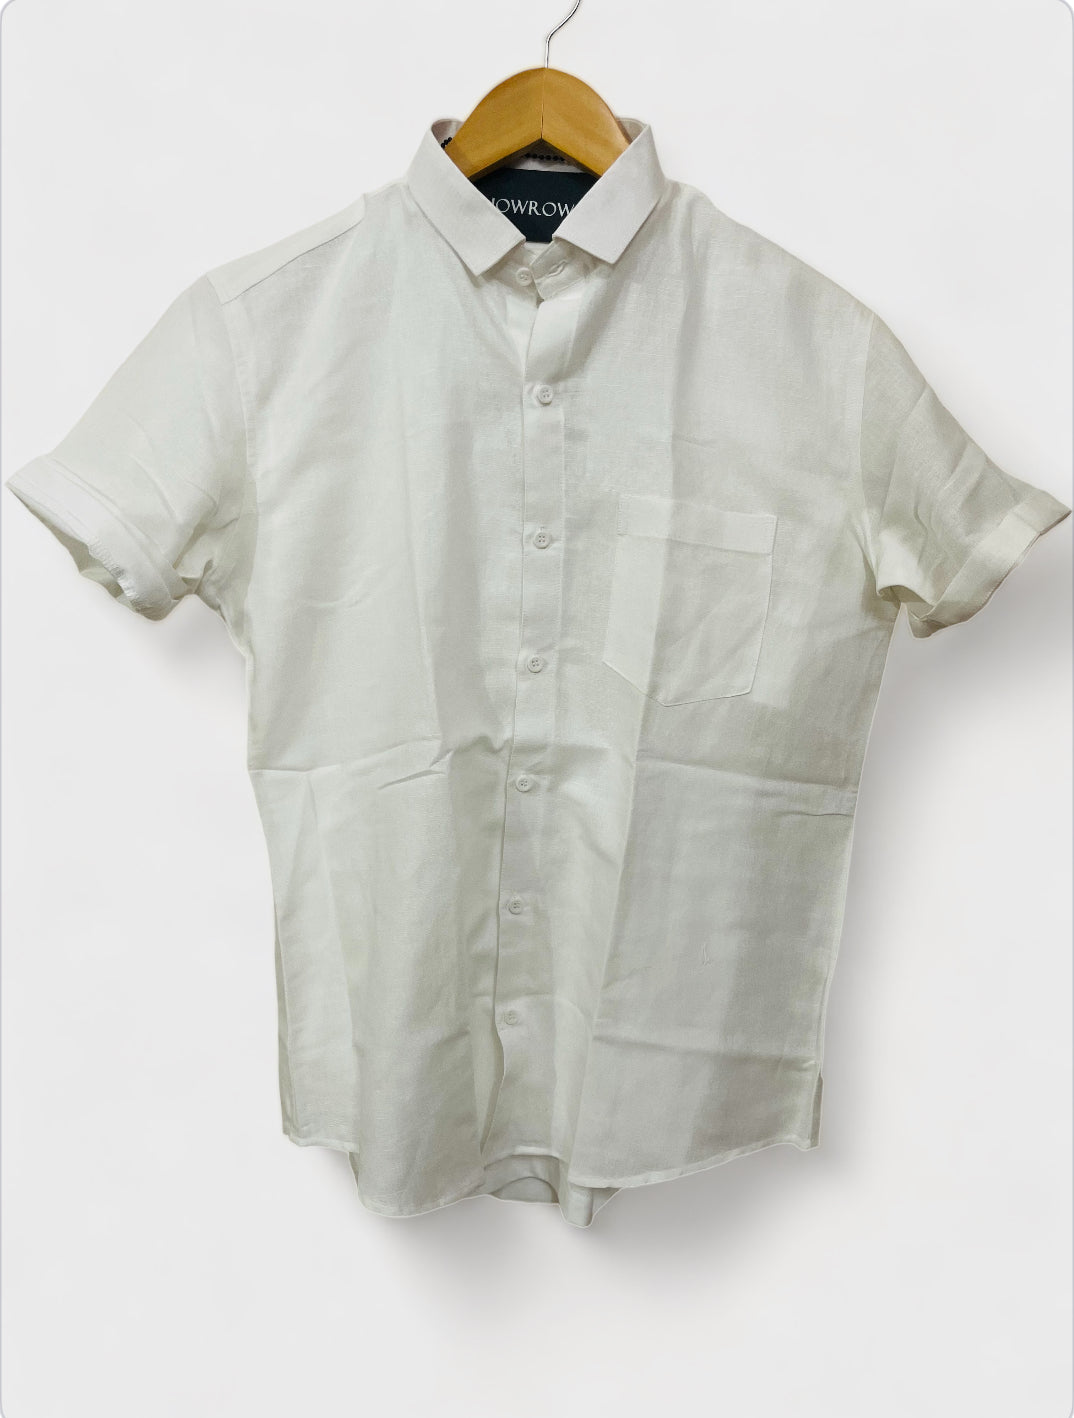 Linen- White half sleeves shirt